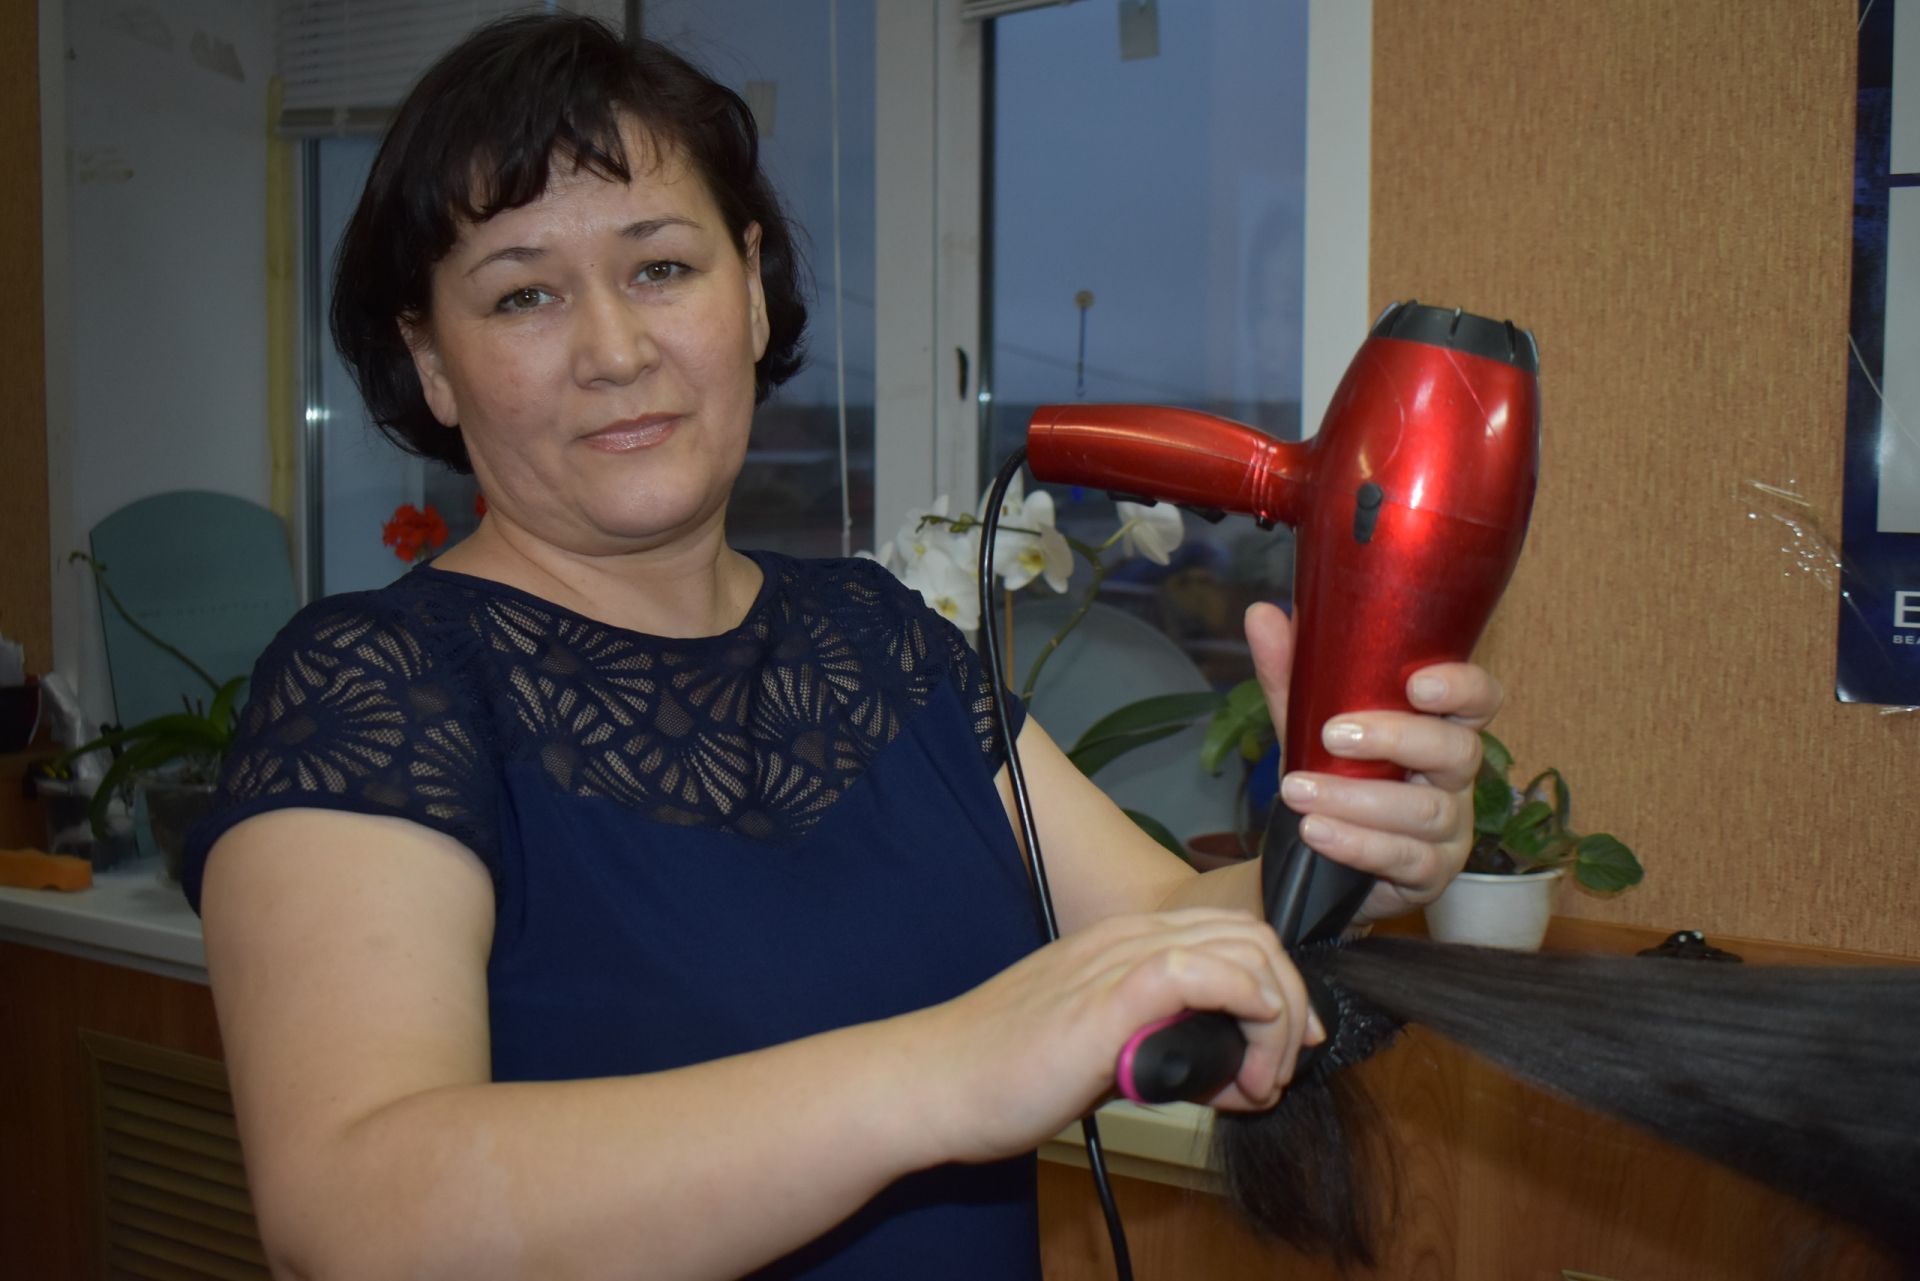 Хания Маняпова начала оказывать населению парикмахерские услуги 8 лет назад